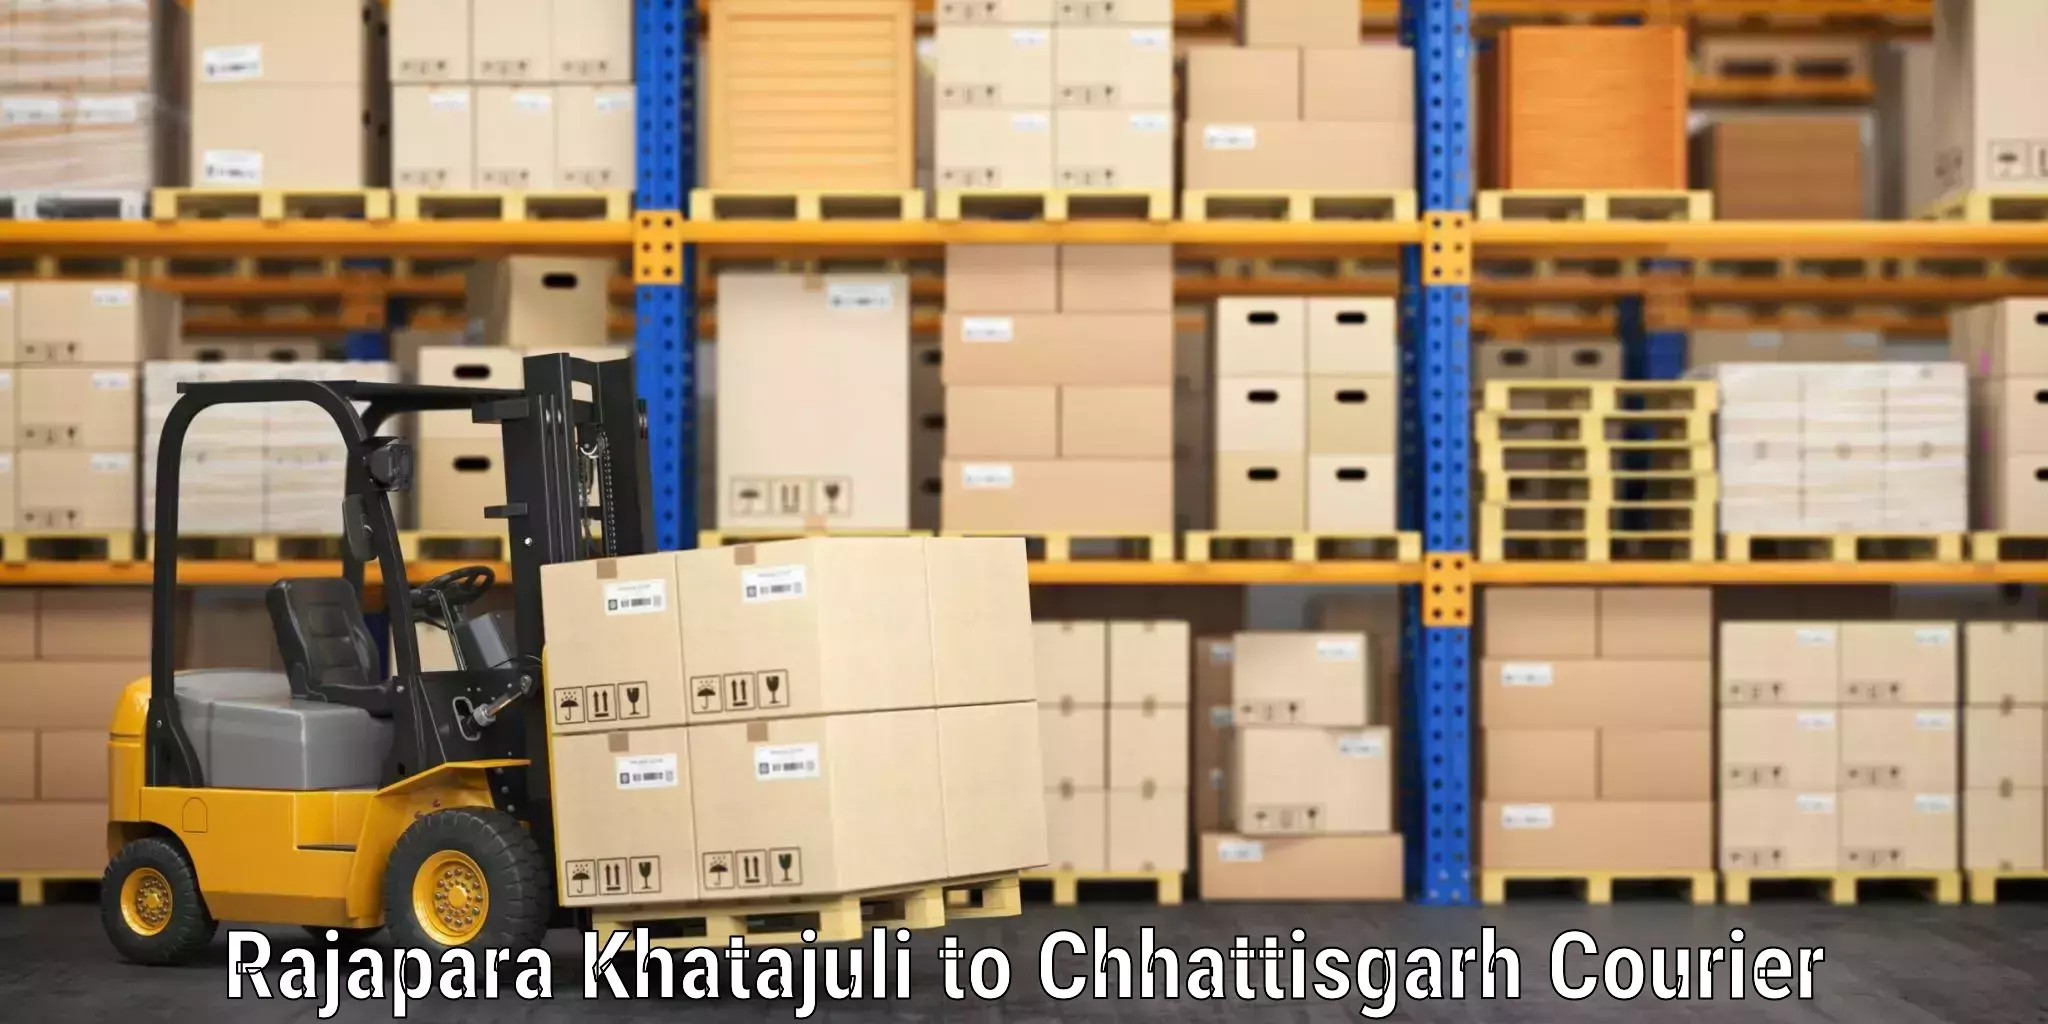 Luggage shipment strategy Rajapara Khatajuli to Mahasamund